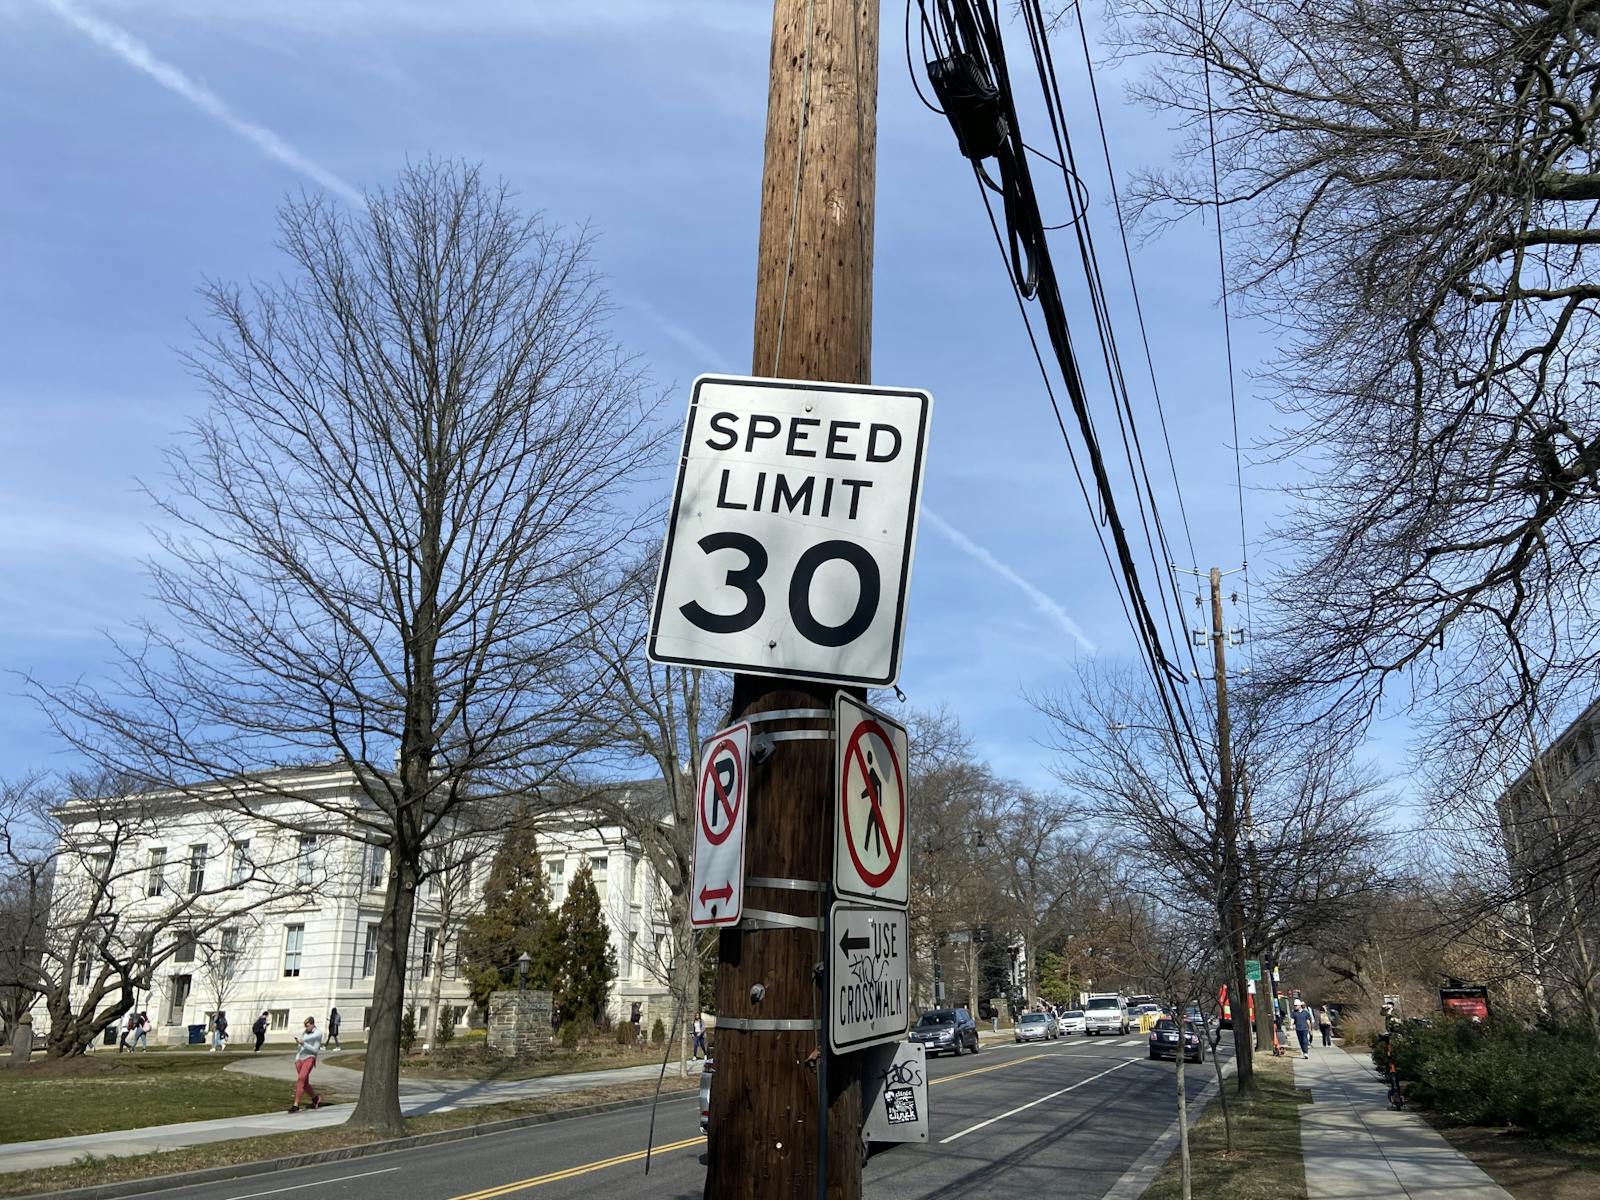 Neighbourhood speed limits